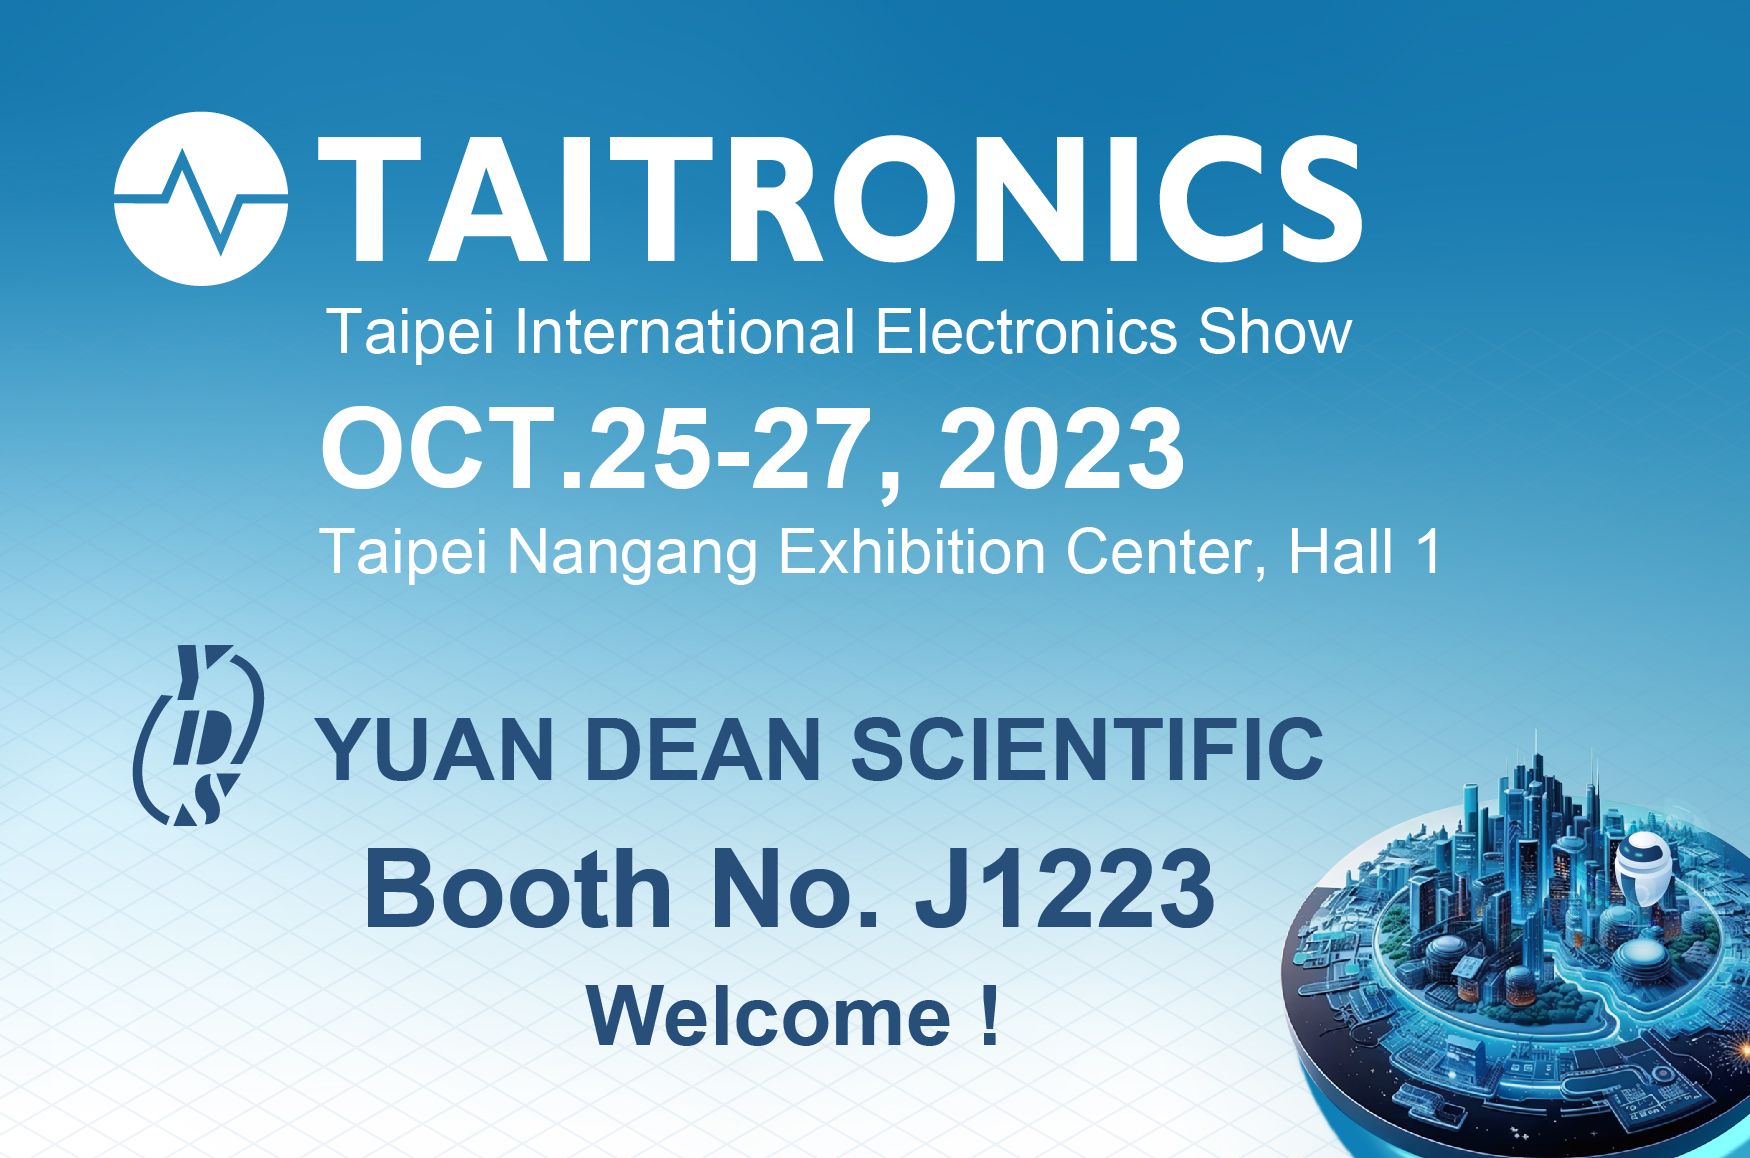 2023 TAITRONICS - bienvenidos a visitar el stand de YUAN DEAN - J1223